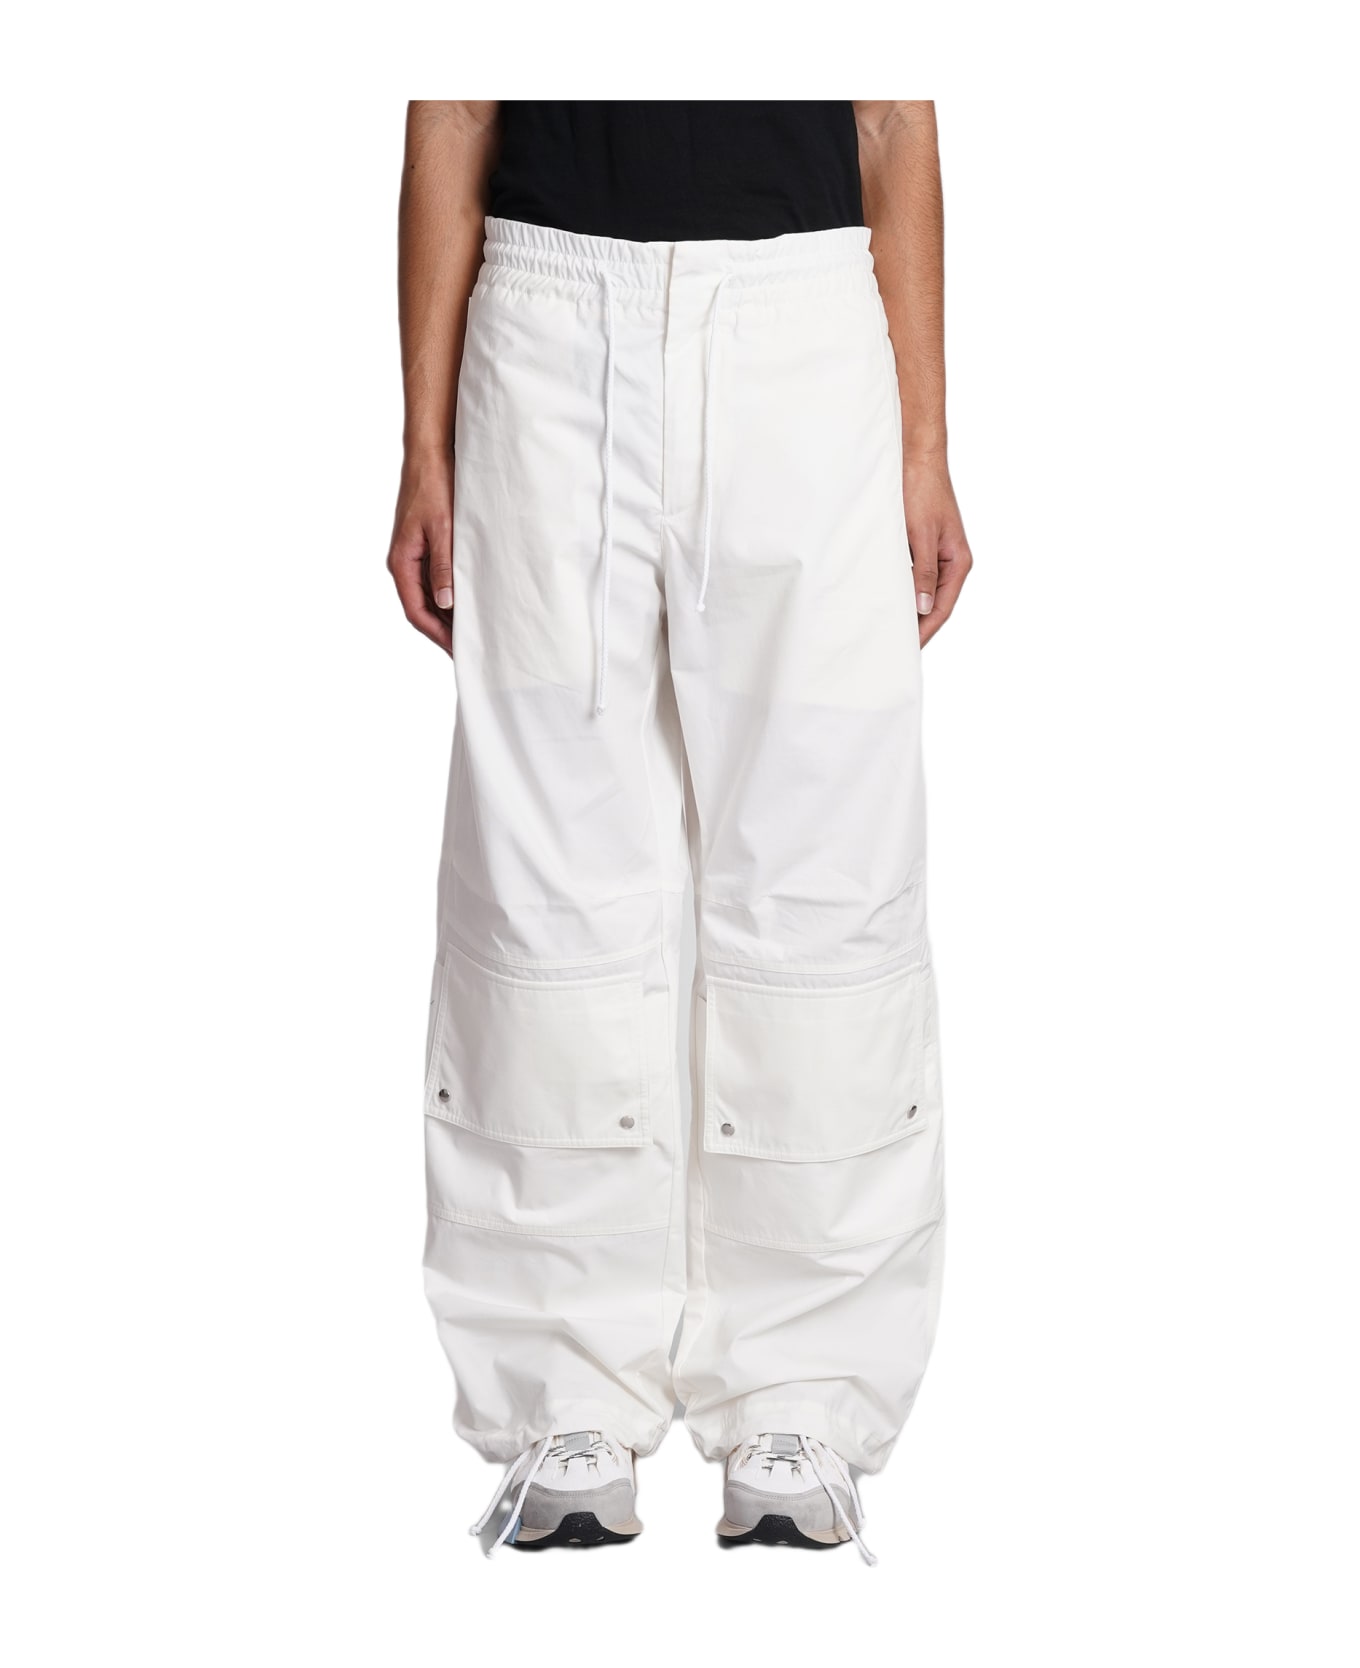 OAMC Pants In White Cotton - white